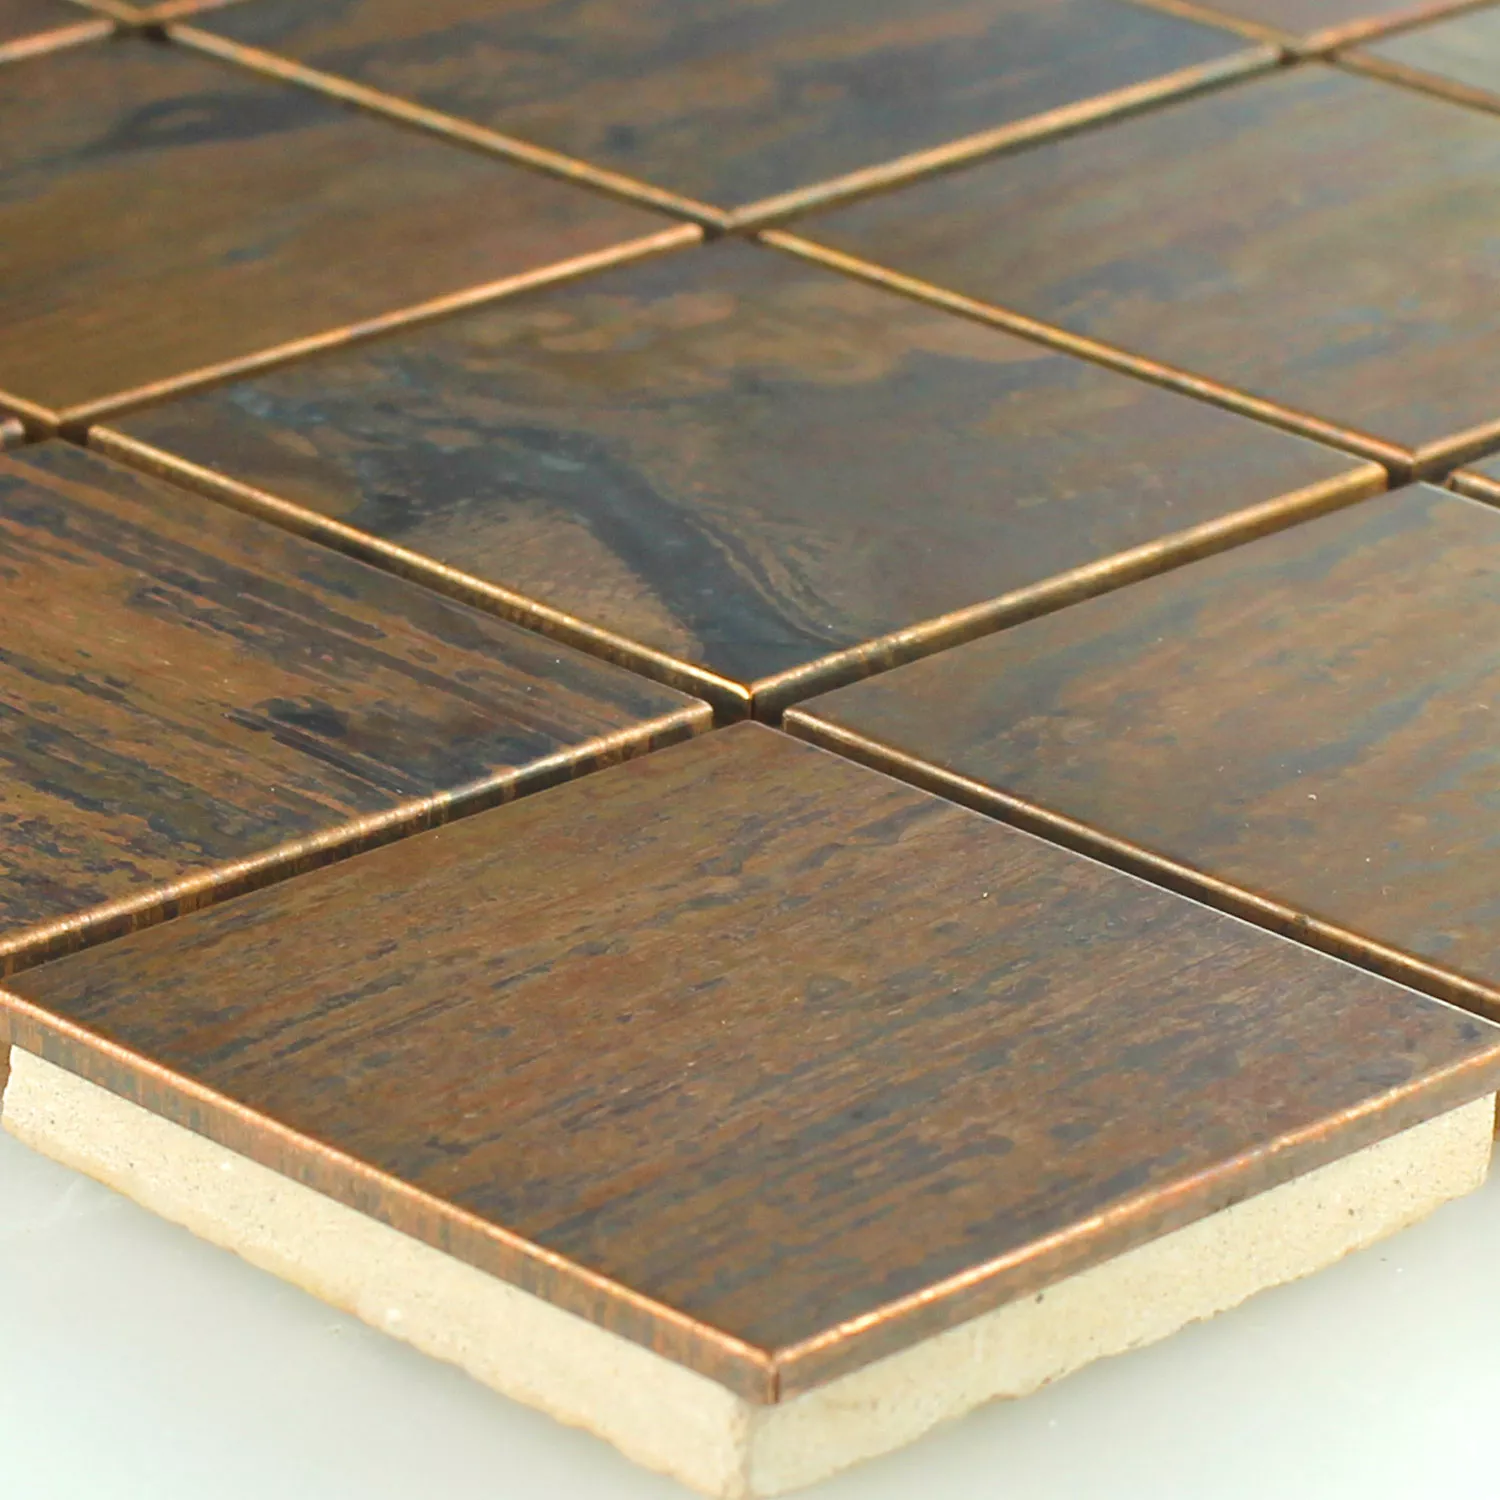 Sample Mosaic Tiles Copper Quadrat 